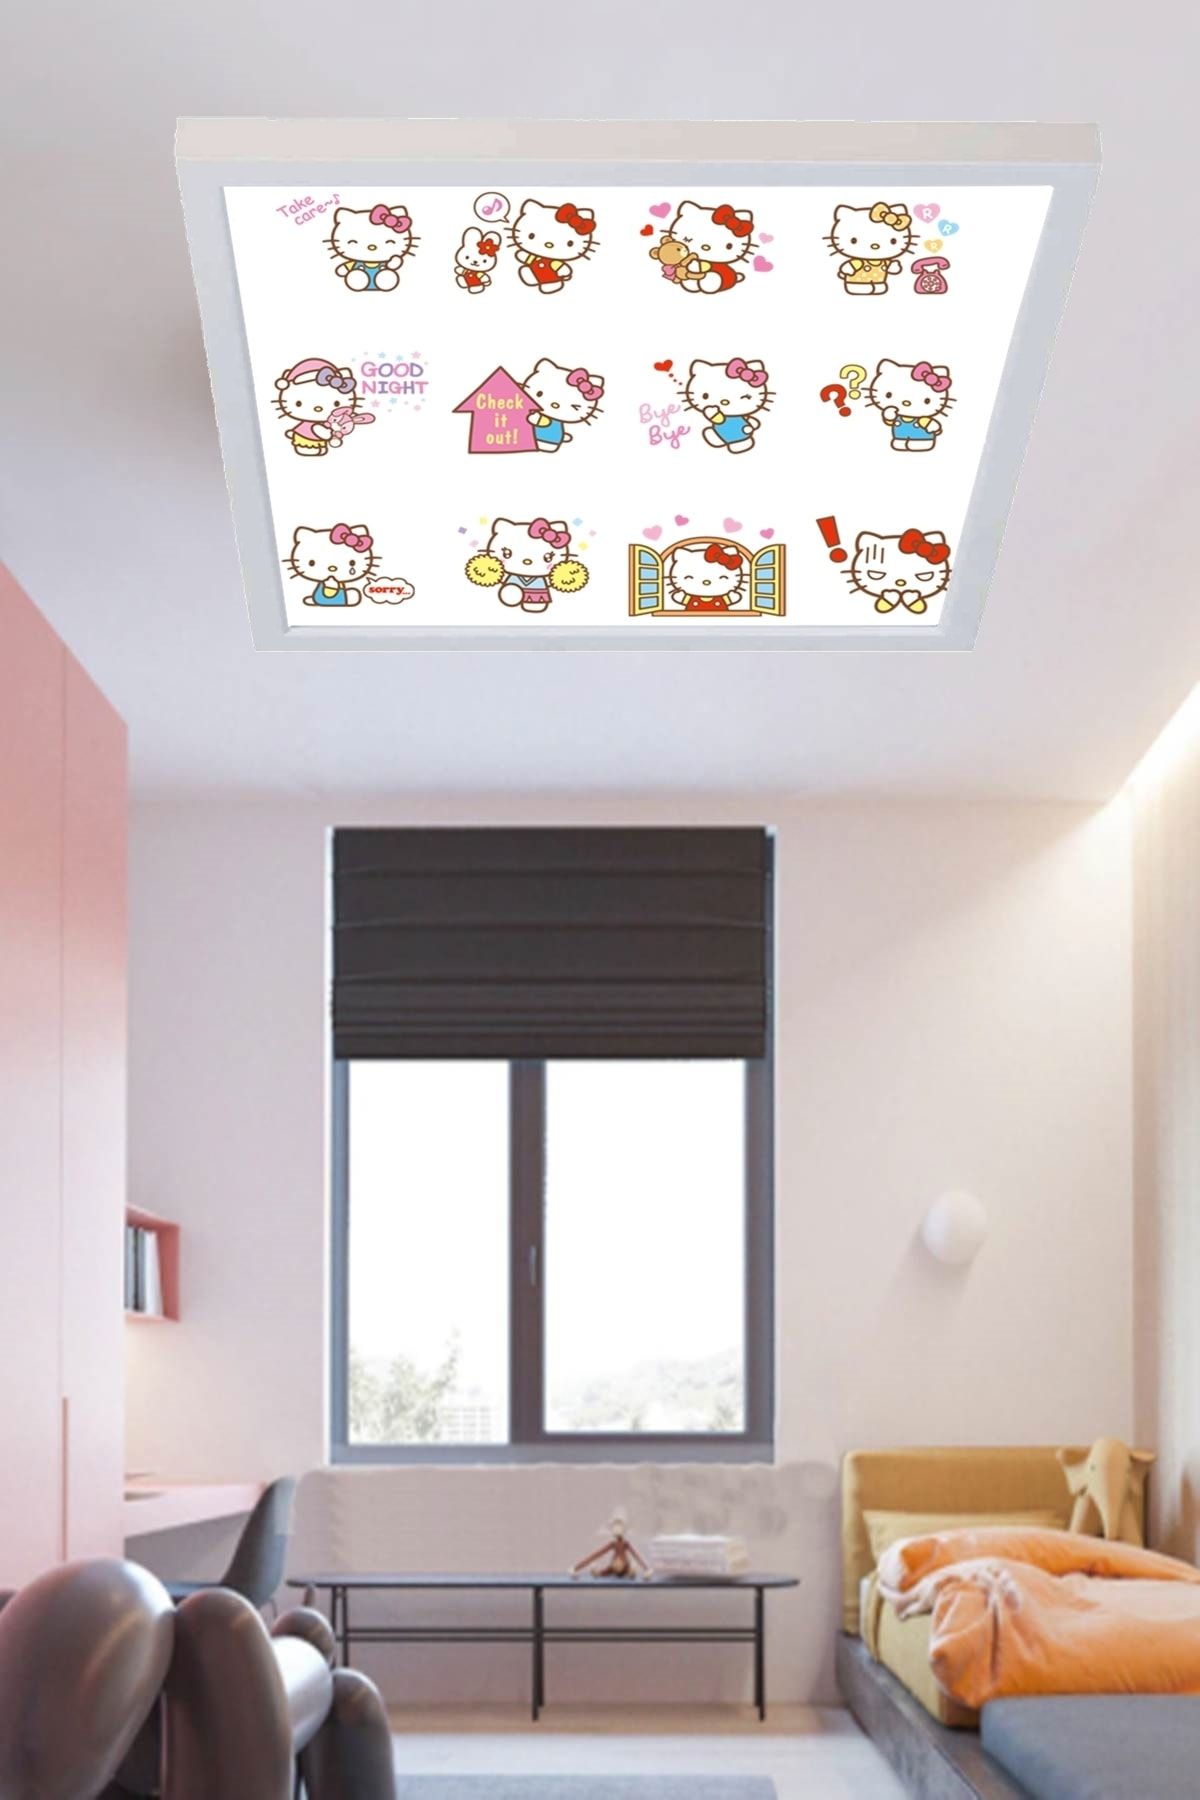 Gökyüzü Panel Hello Kitty Emoji Led Avize Özel Baskı Ledli Tavan Lambası